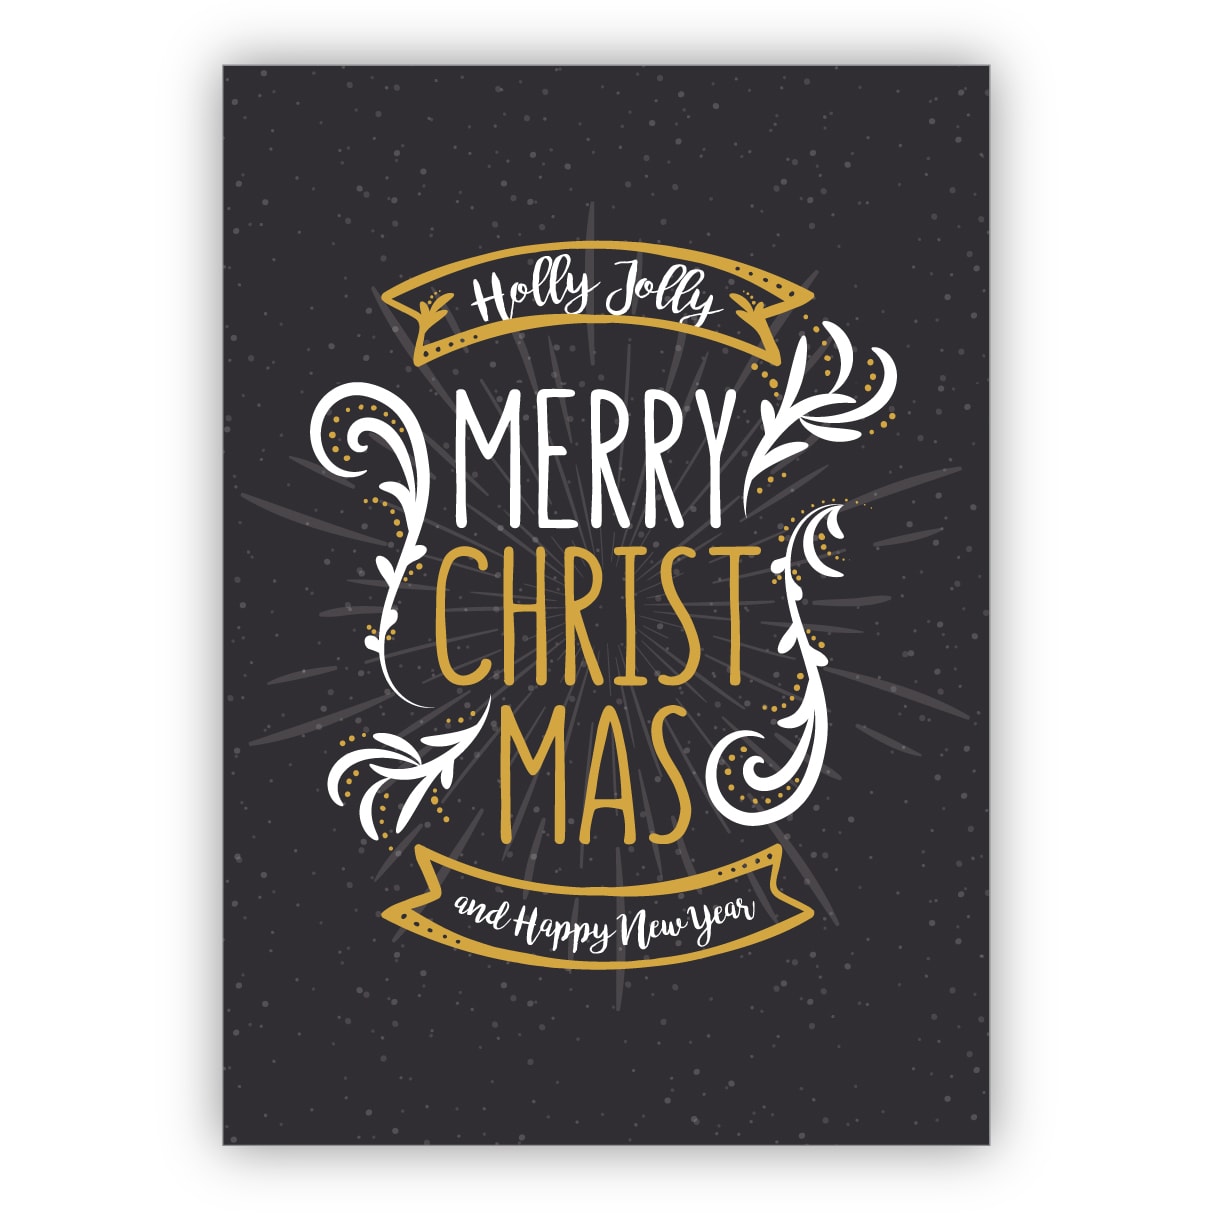 Schicke Weihnachtskarte mit Ornamenten im Kreide Look auch zu Silvester: Holly Jolly Merry Christmas and happy new year